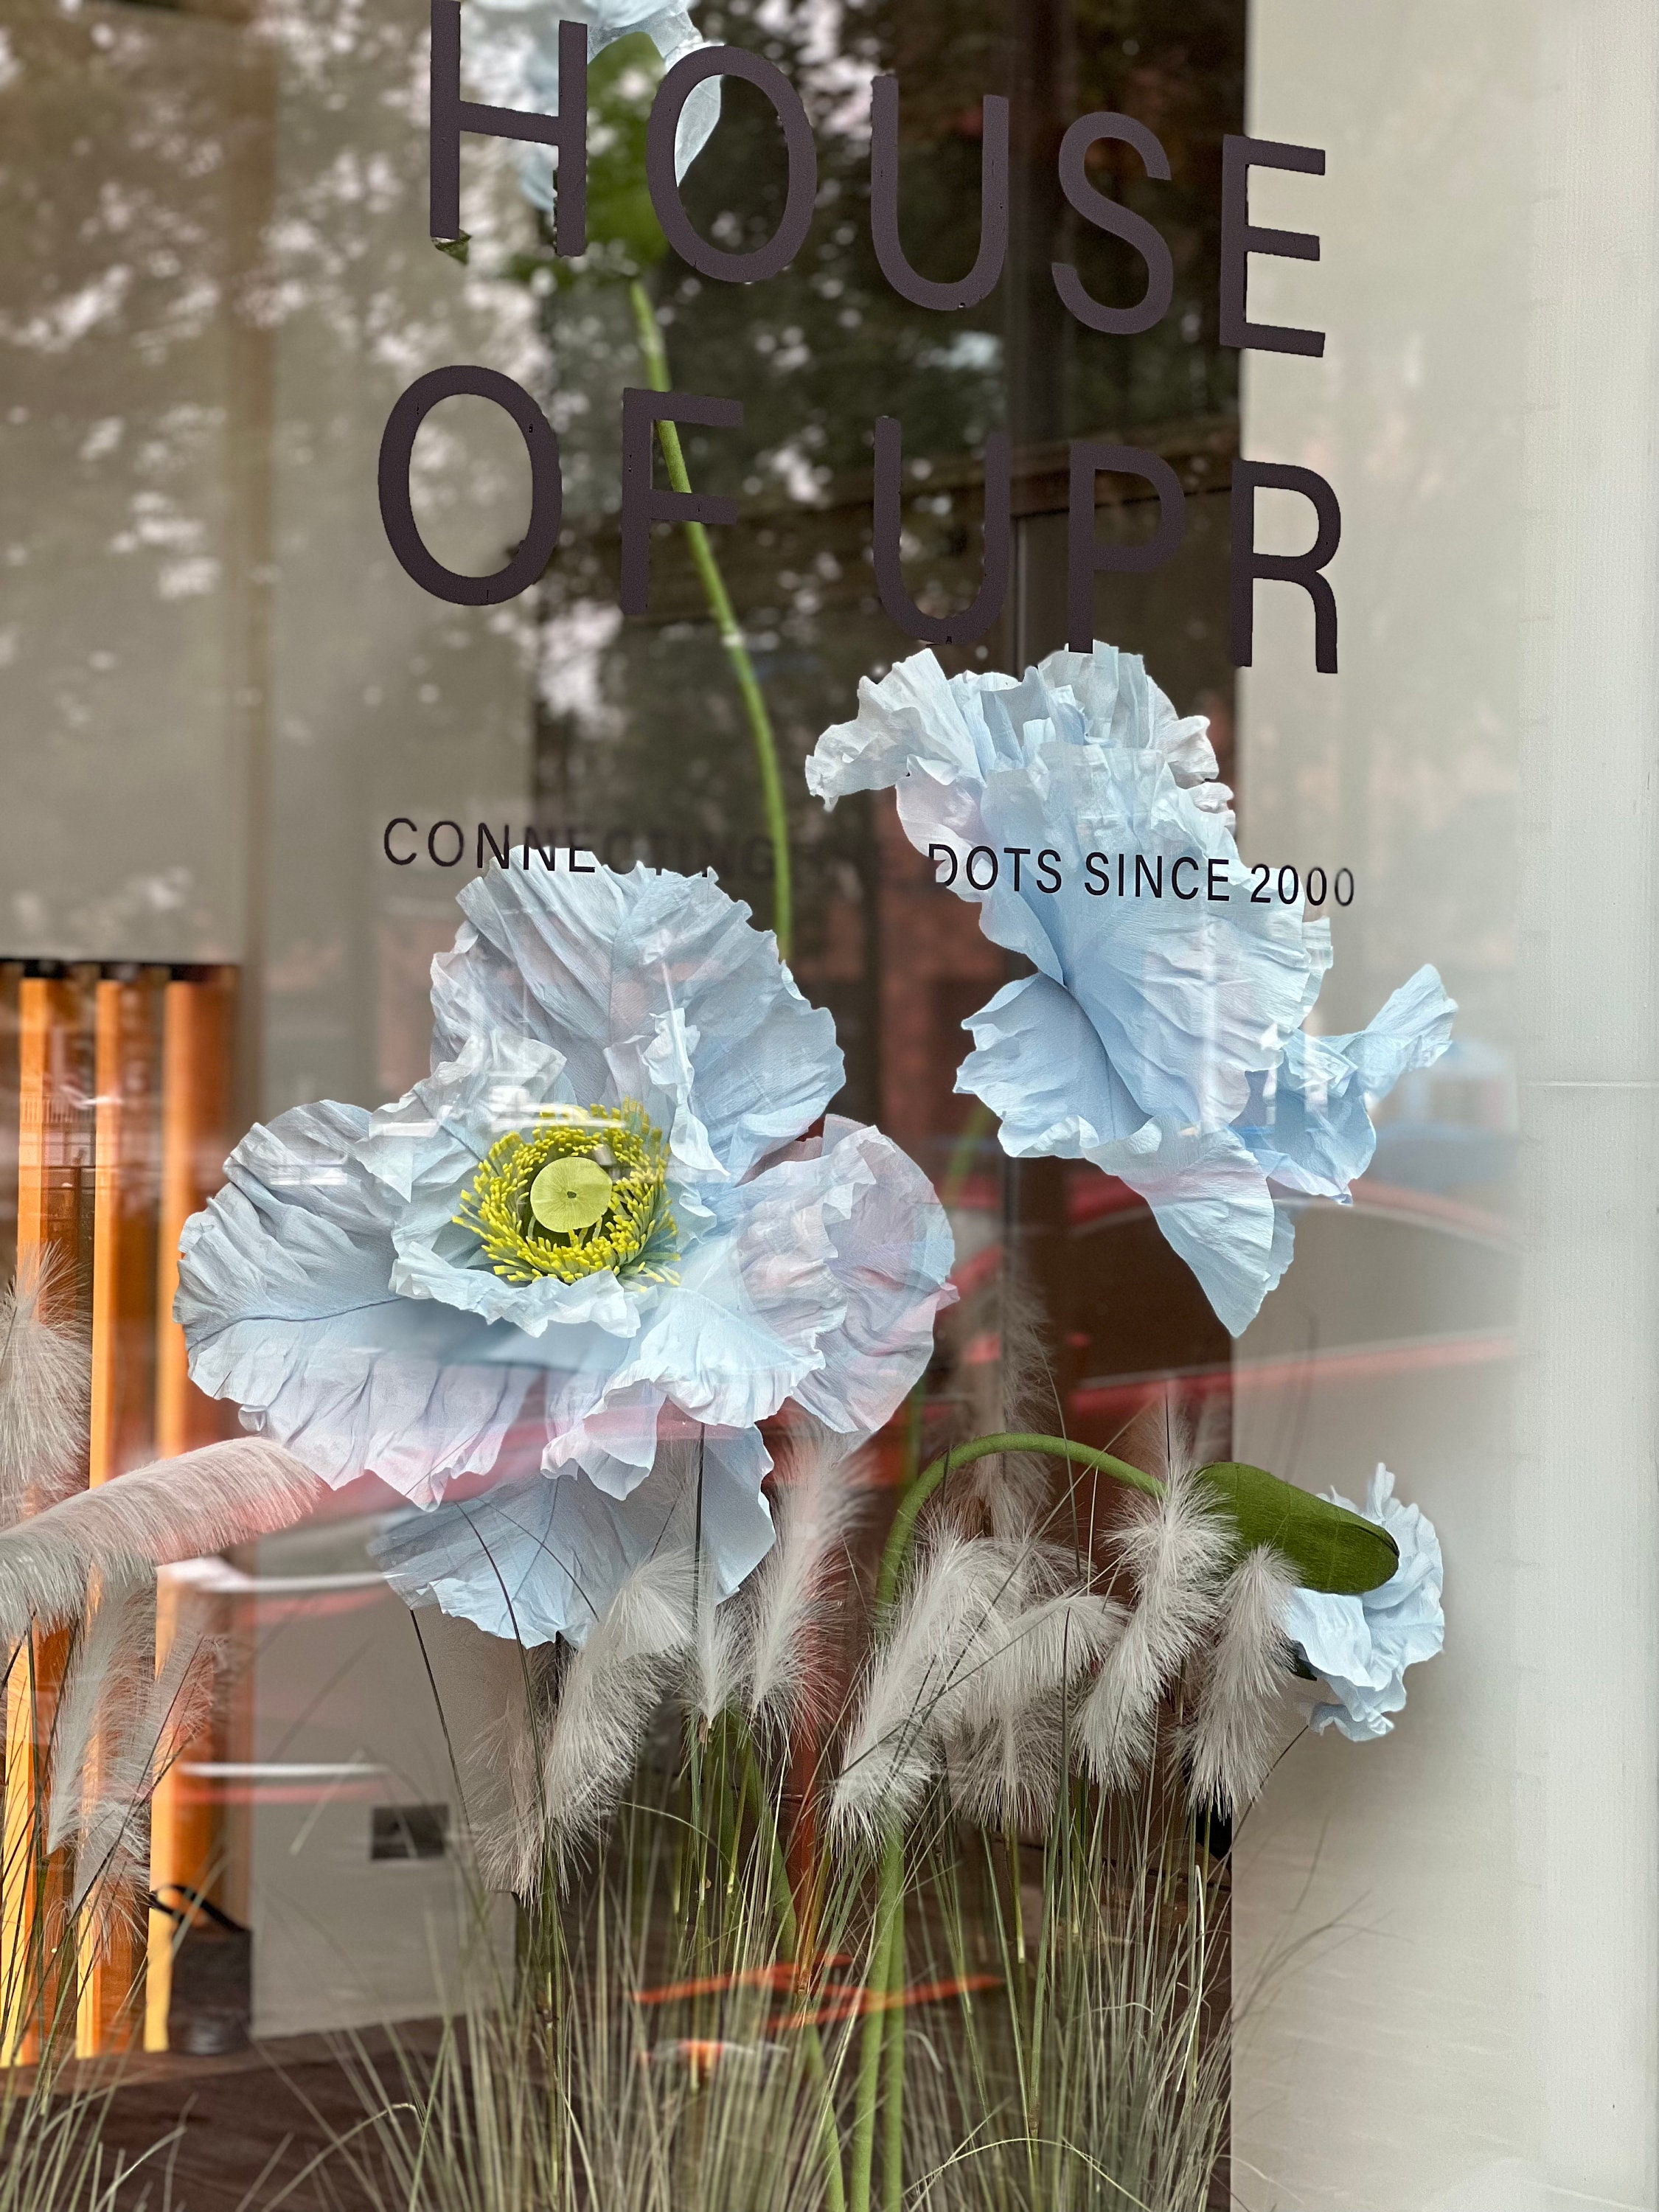 Idée décoration pour vitrine: autocollant fleurs de coquelicots géants